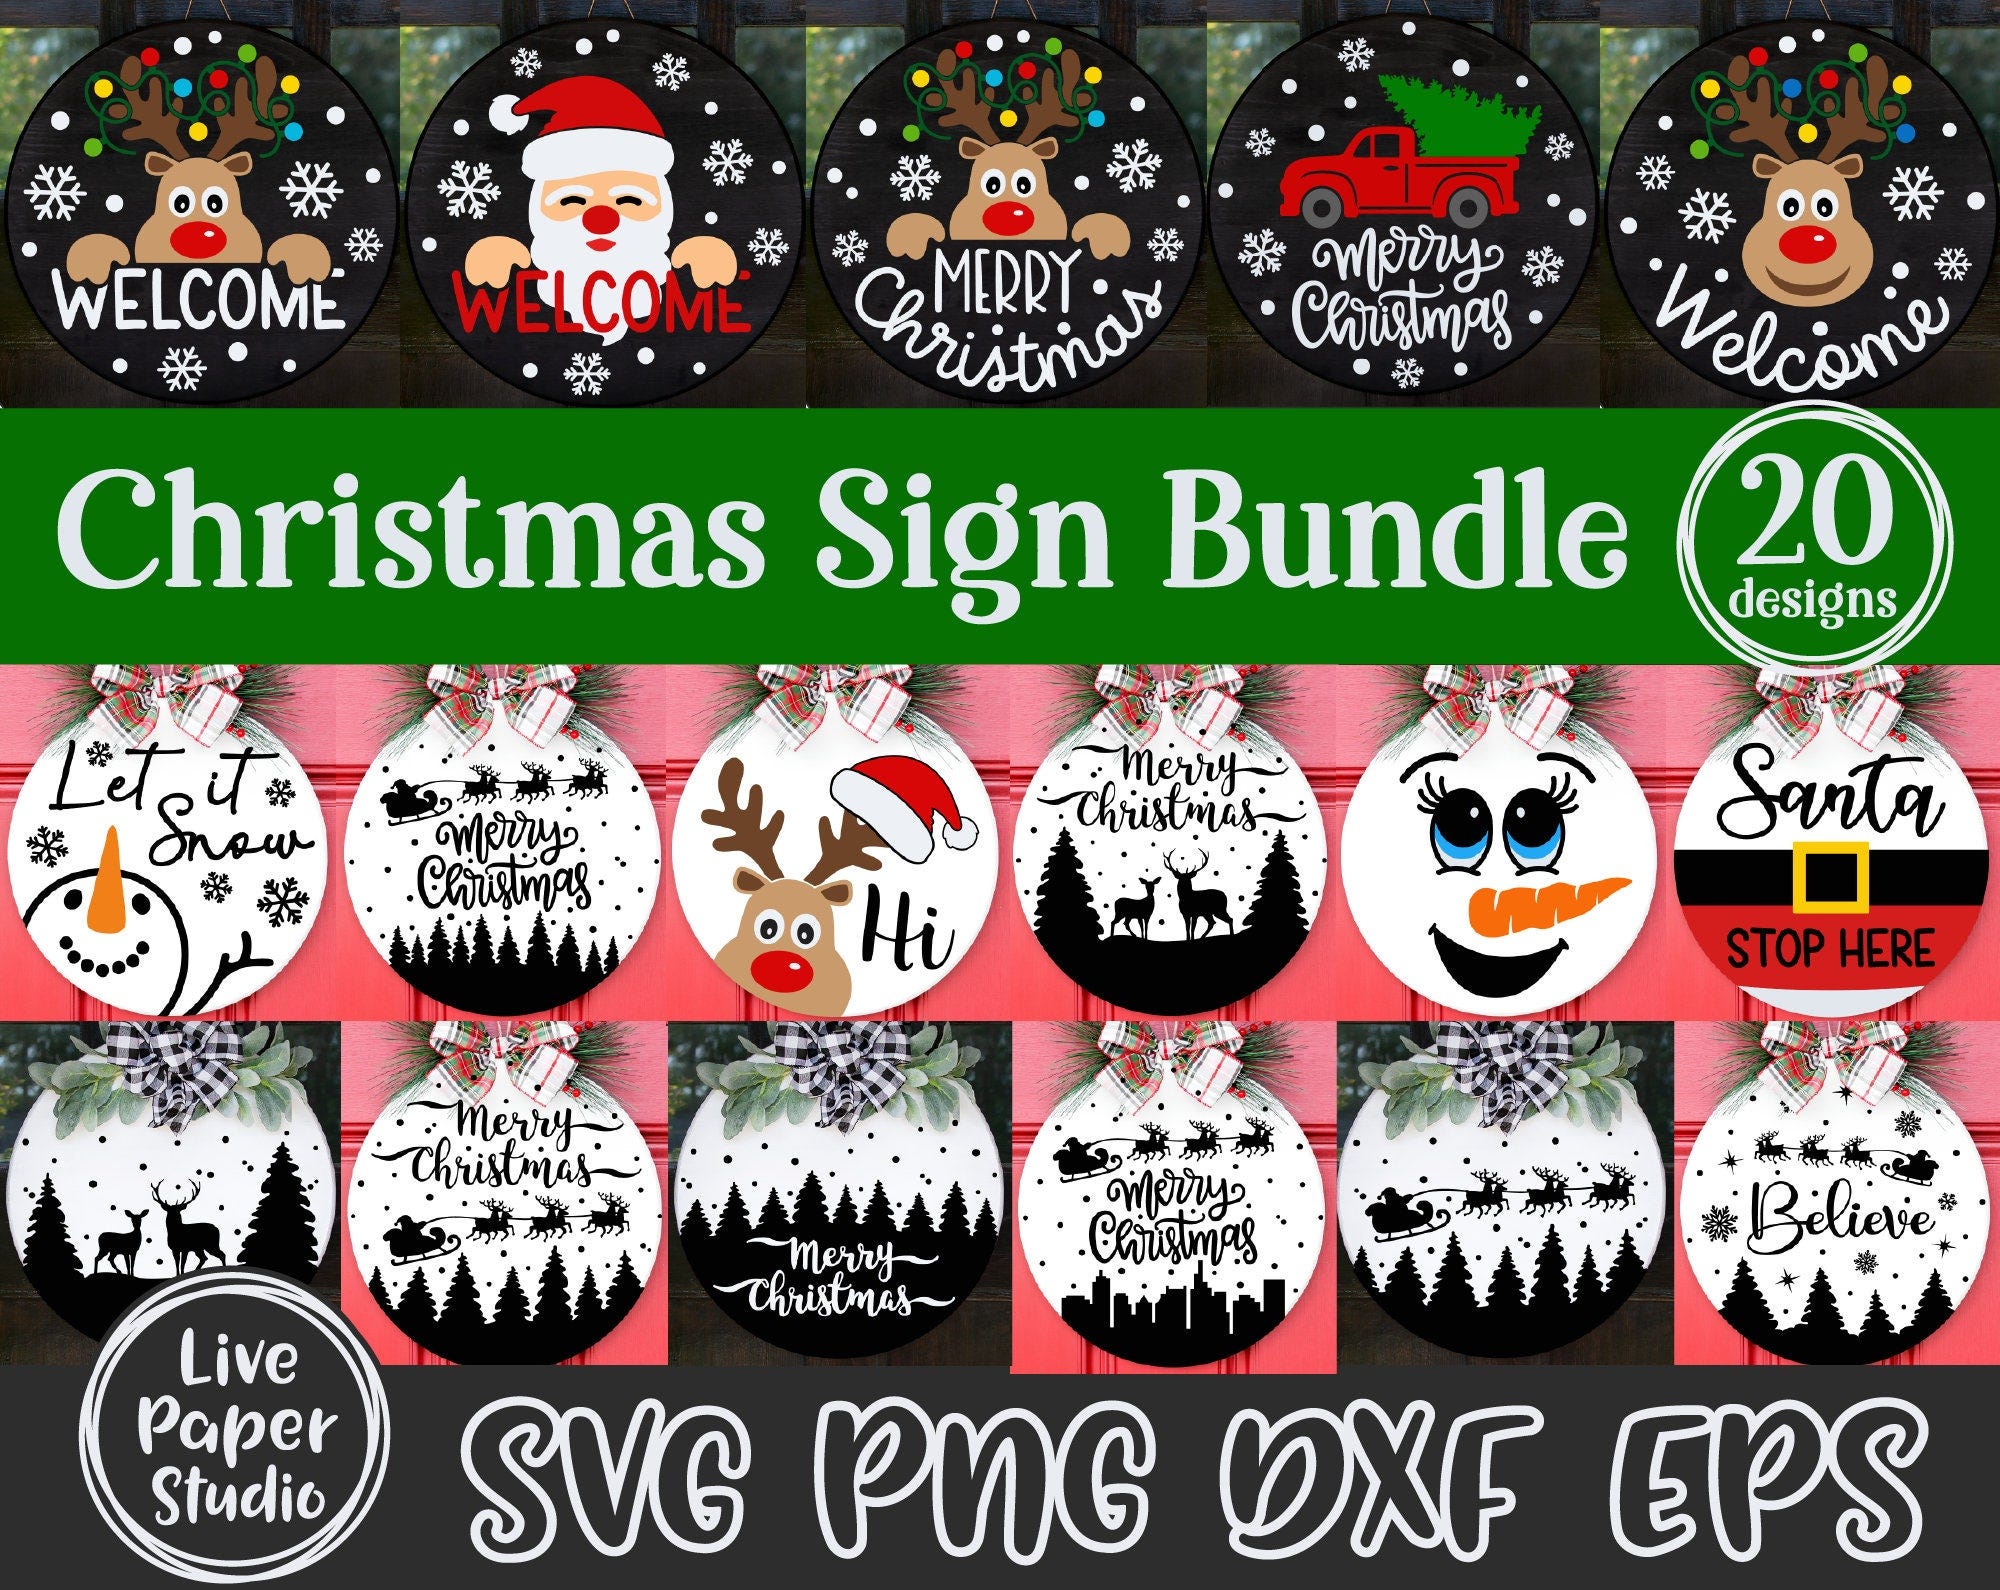 Christmas Door Sign Svg Bundle, Christmas Welcome Sign Svg, Christmas Round Sign, Reindeer, Santa, Digital Download Svg, Png, Dxf, Eps Files